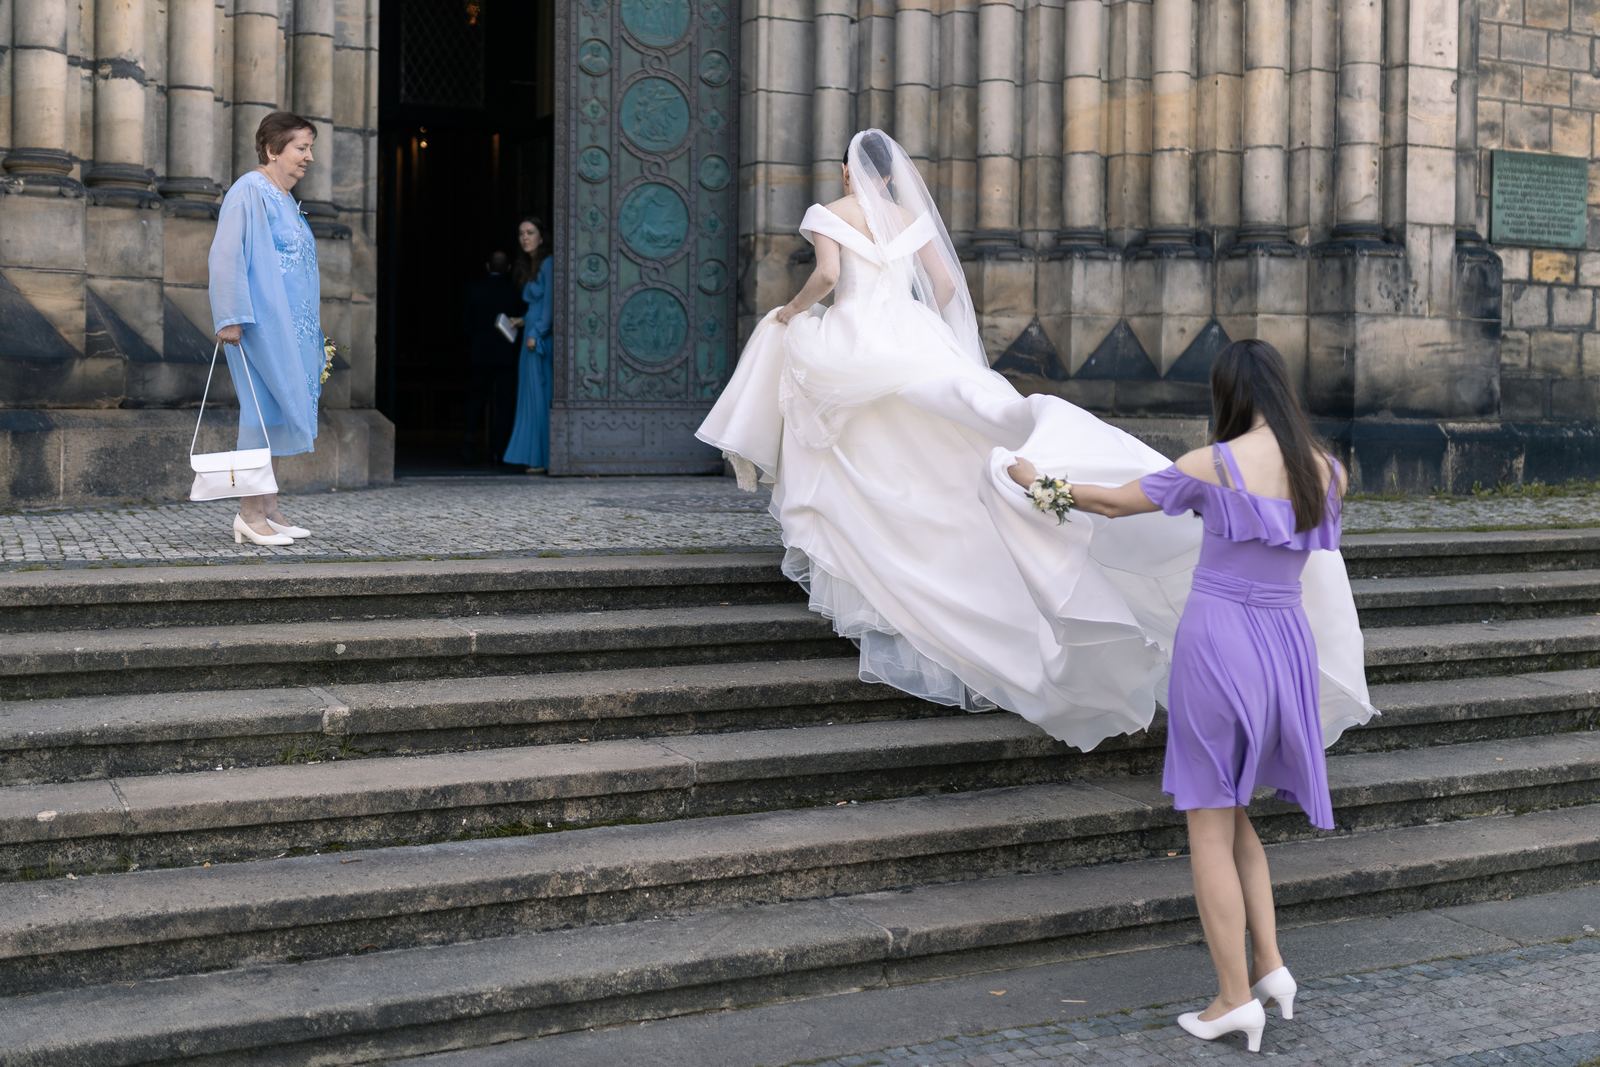 Svatební fotky Praha - nevěsta vchází do kostela